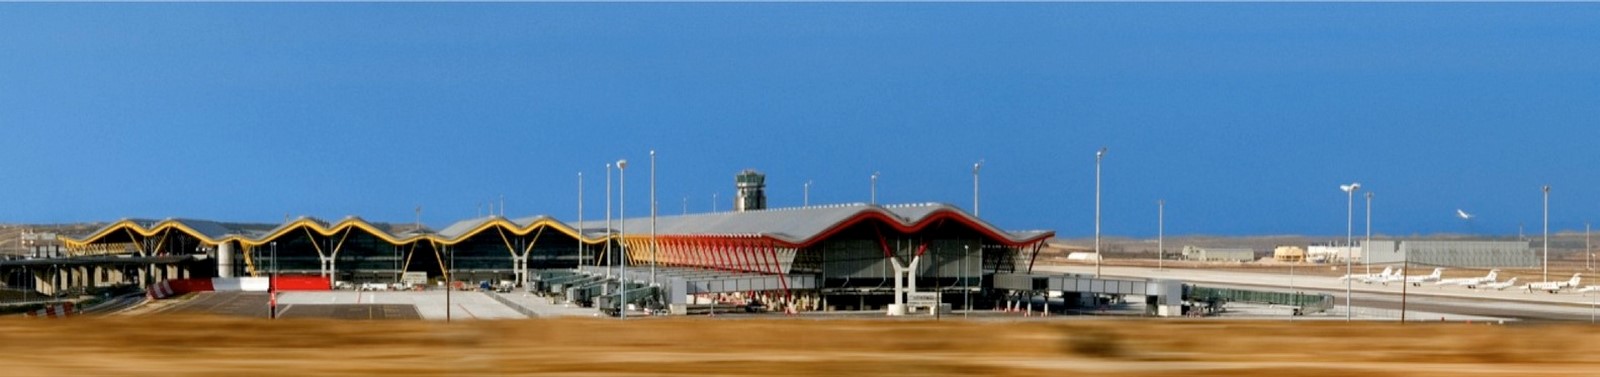 10 Diseños de aeropuertos inspiradores en todo el mundo - Sheet10